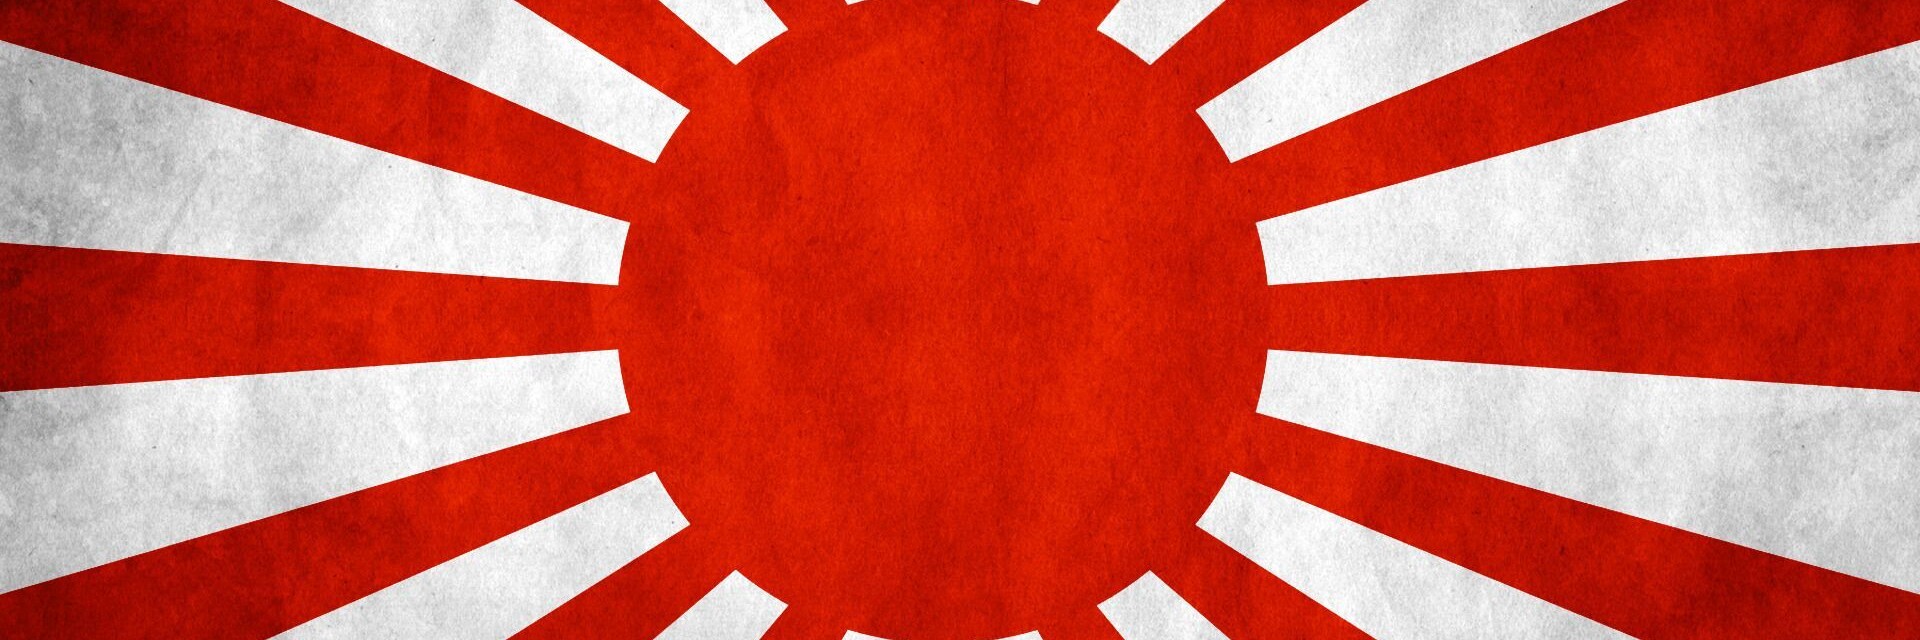 Луч с флага японской империи